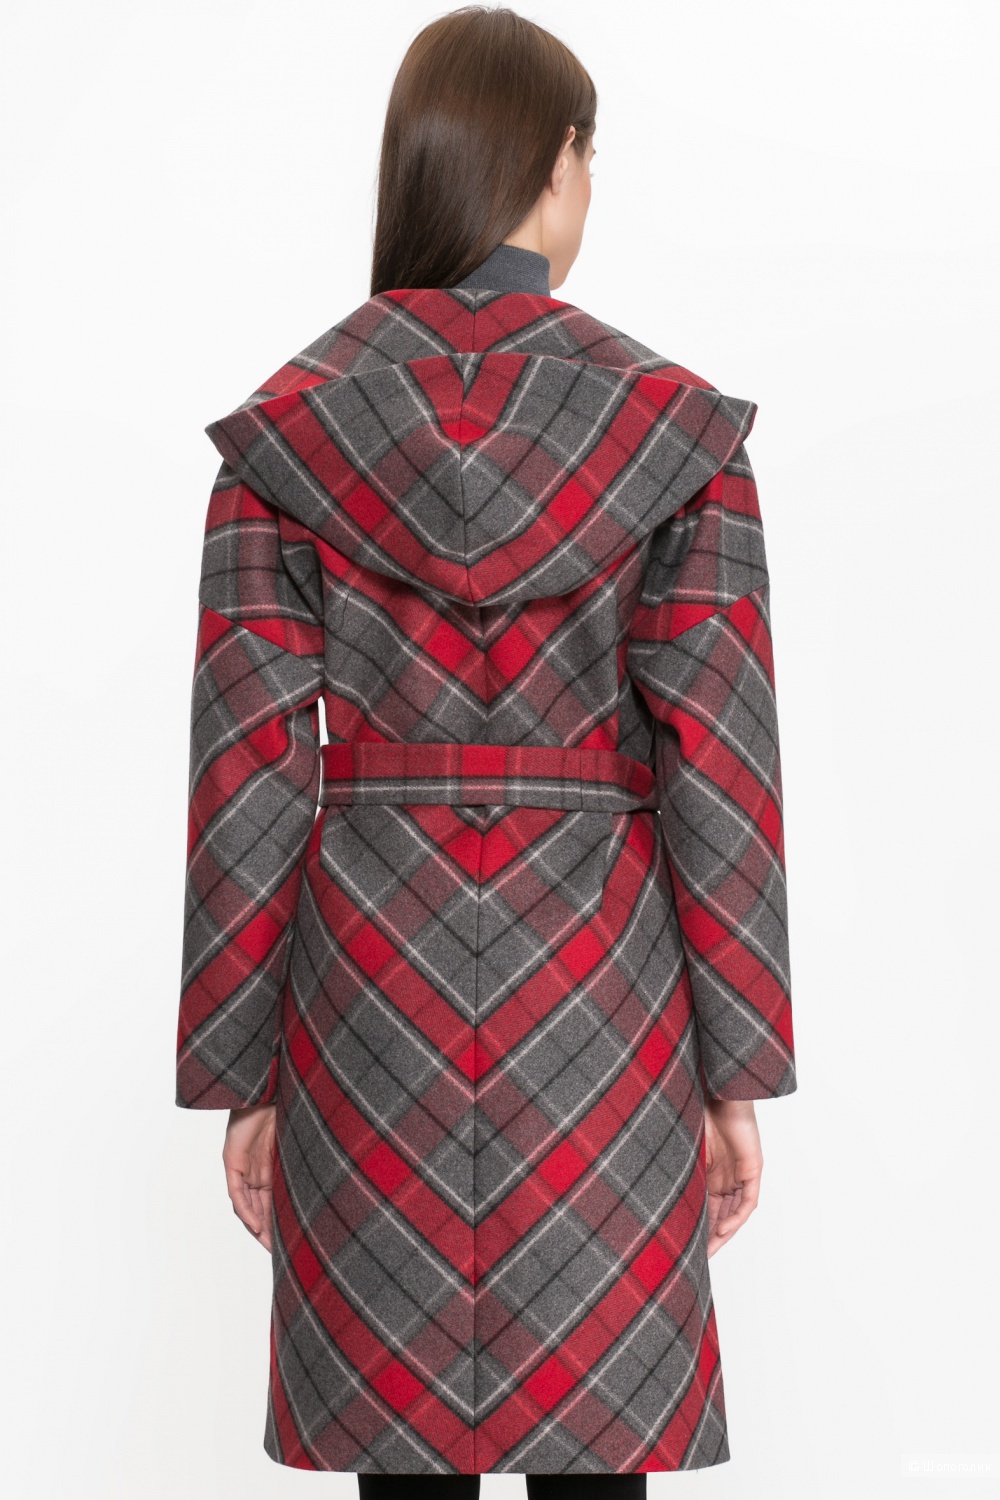 Пальто Style National ( Россия) , 48-50 размер